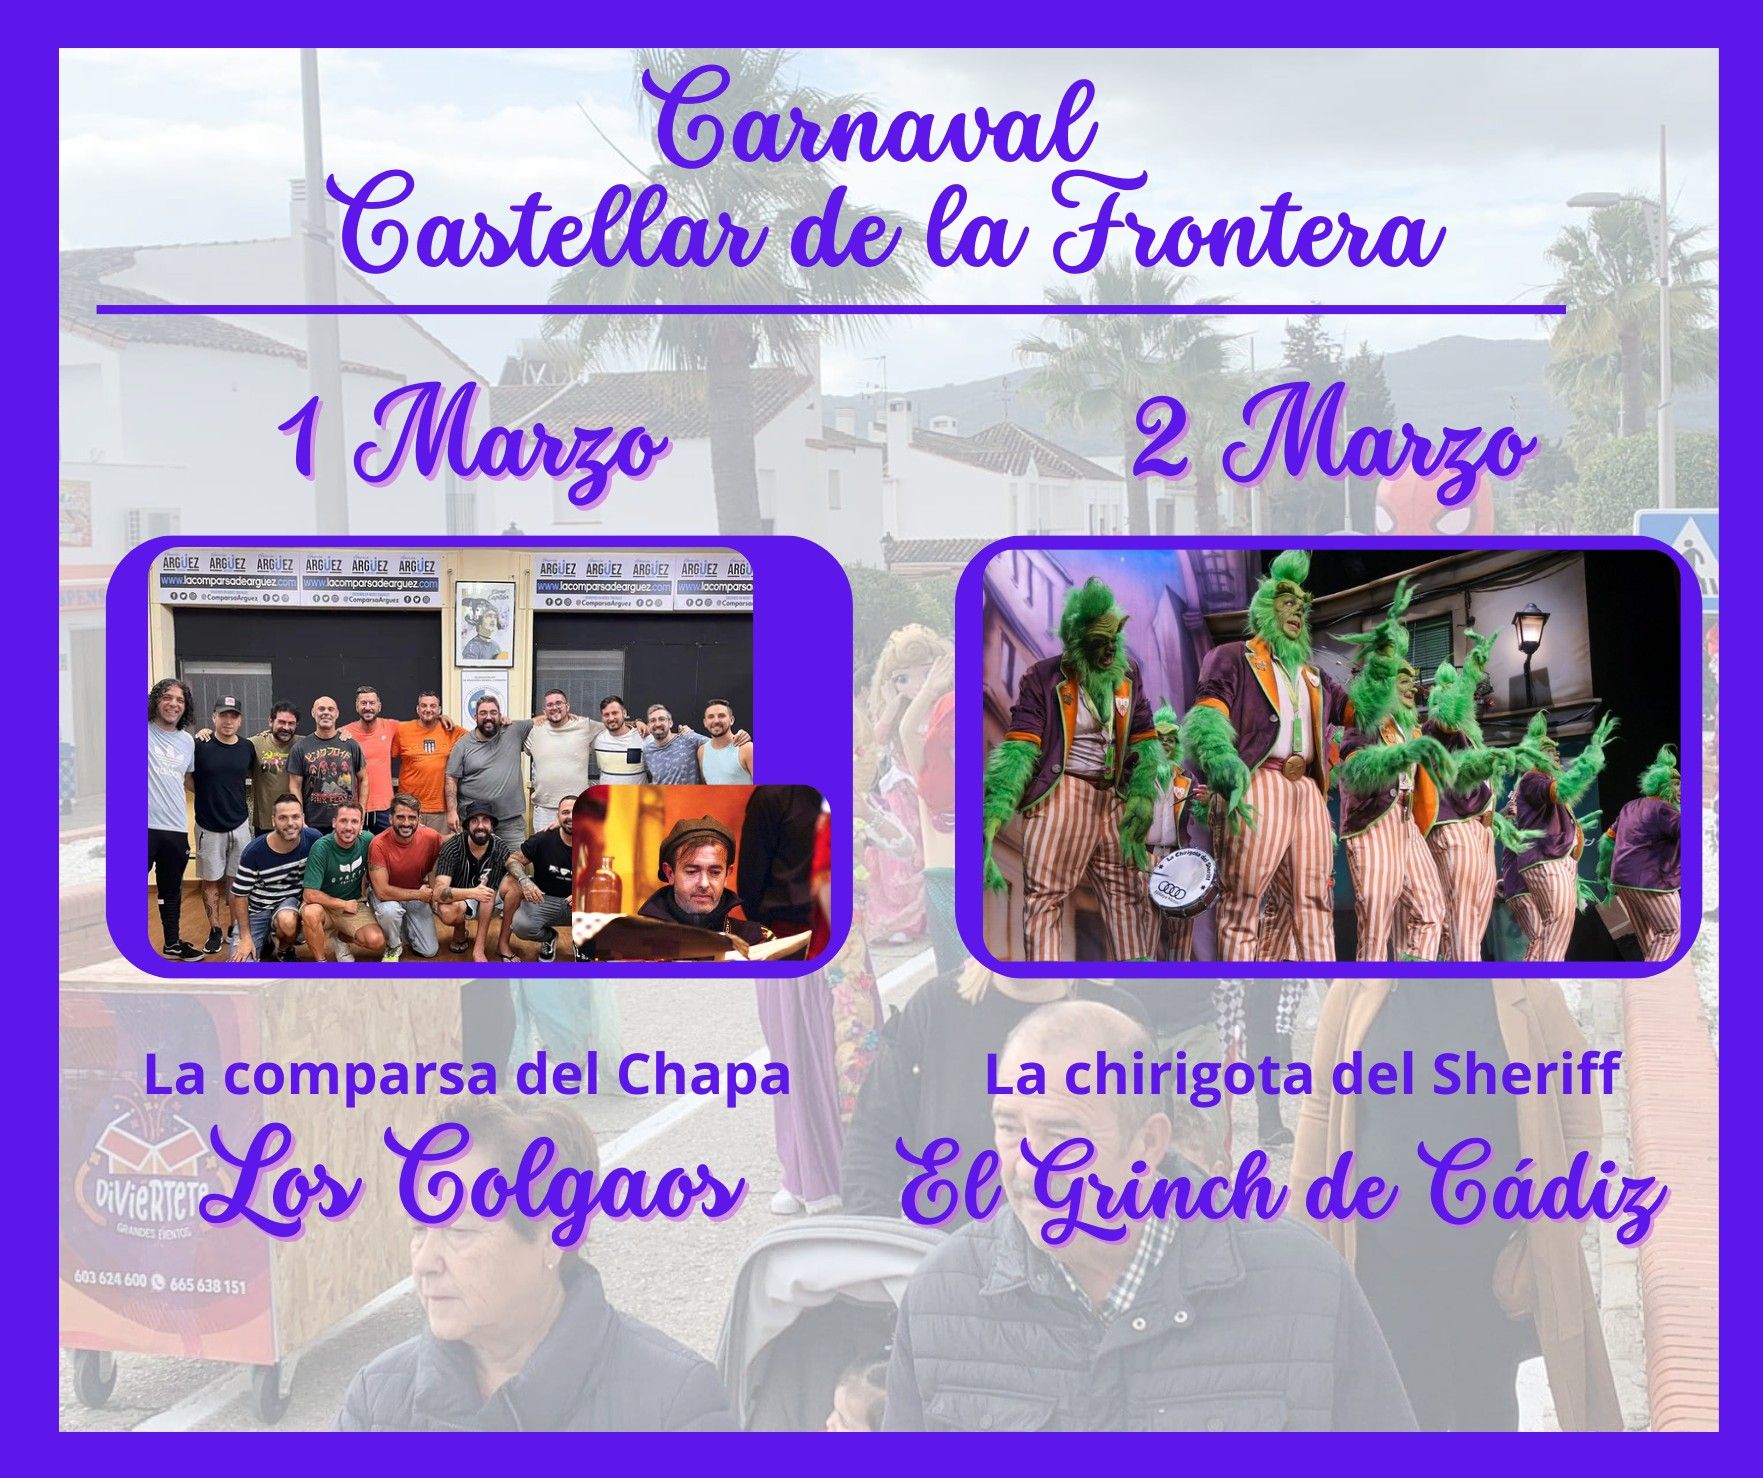 La comparsa del Chapa y la chirigota del Sheriff, entre las actuaciones del Carnaval de Castellar